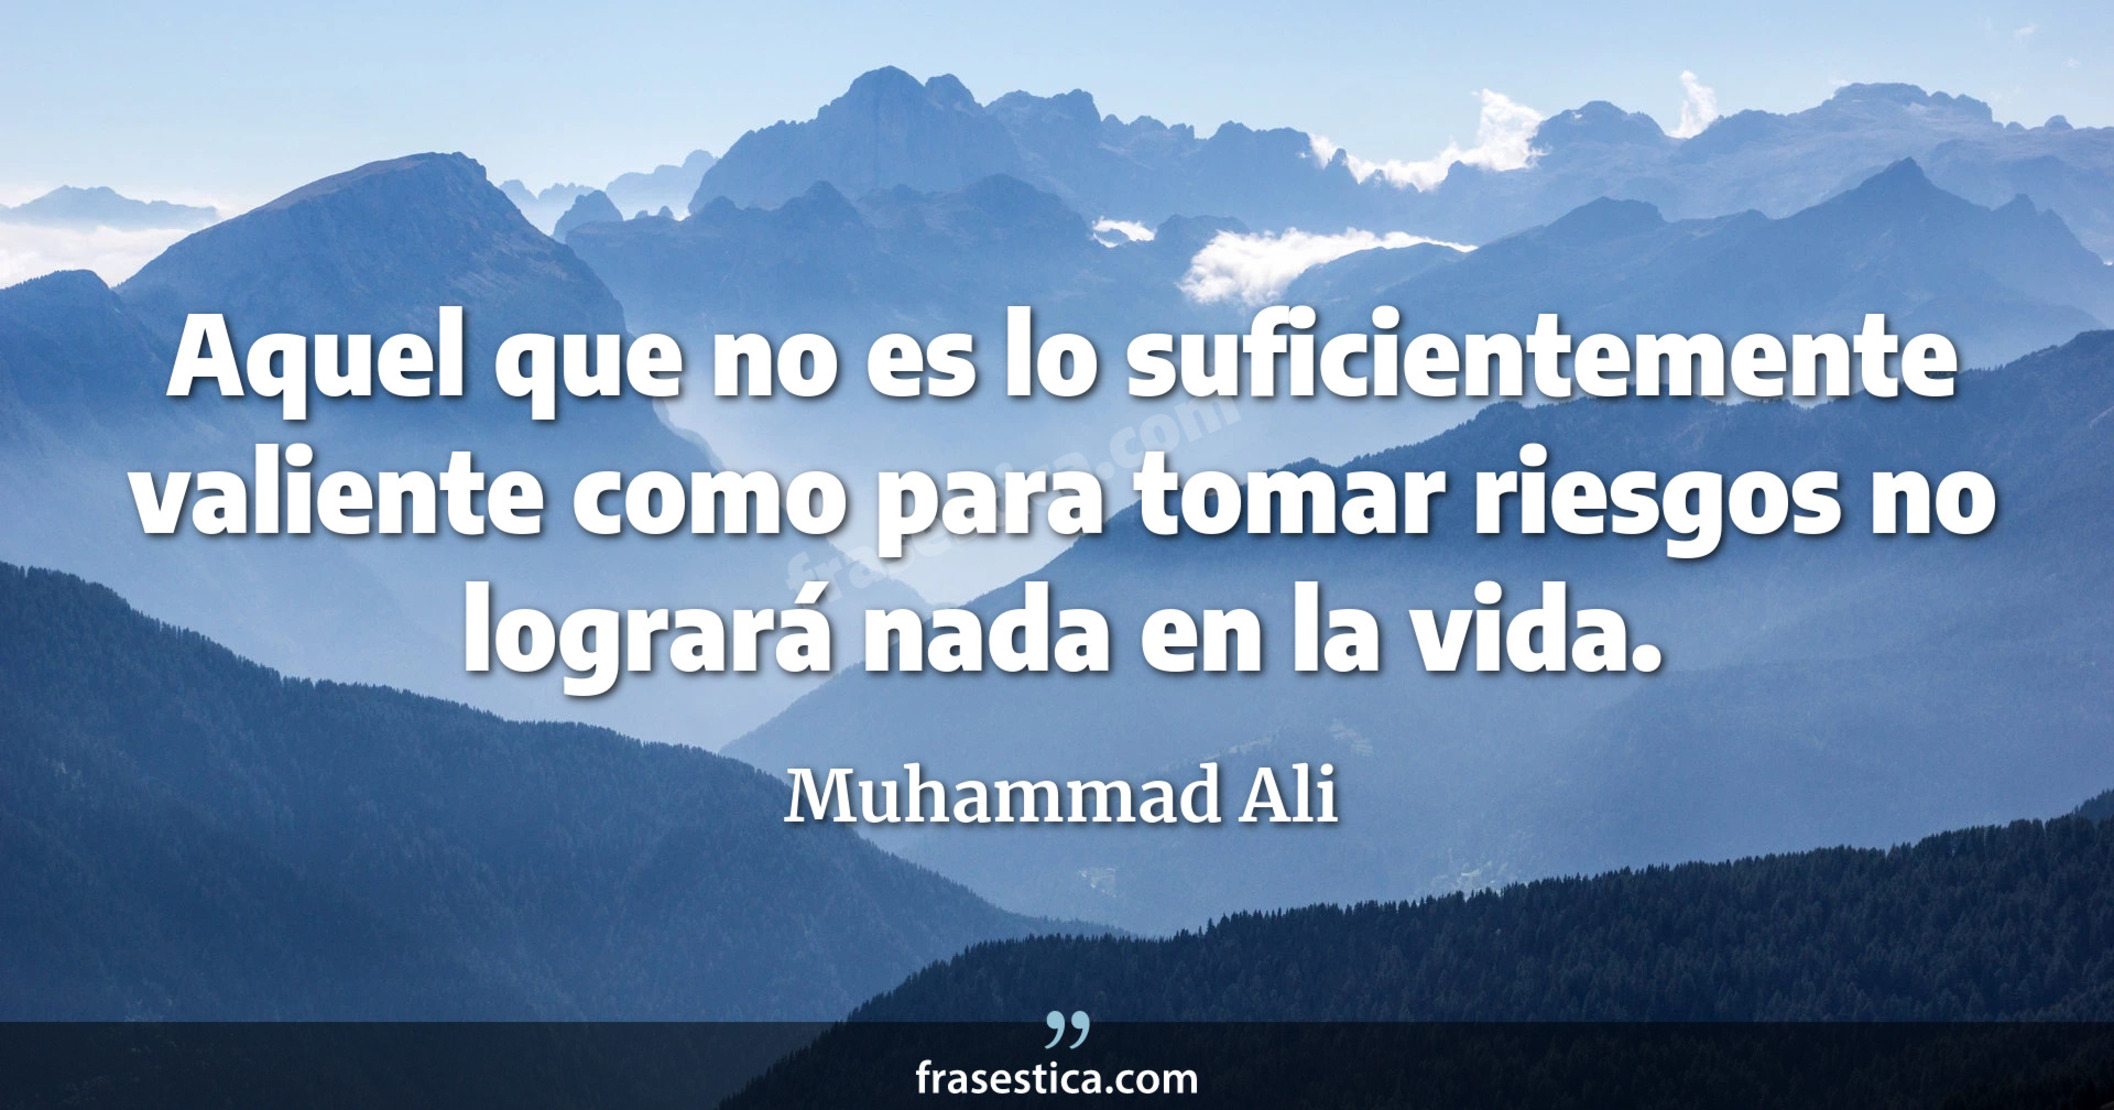 Aquel que no es lo suficientemente valiente como para tomar riesgos no logrará nada en la vida. - Muhammad Ali